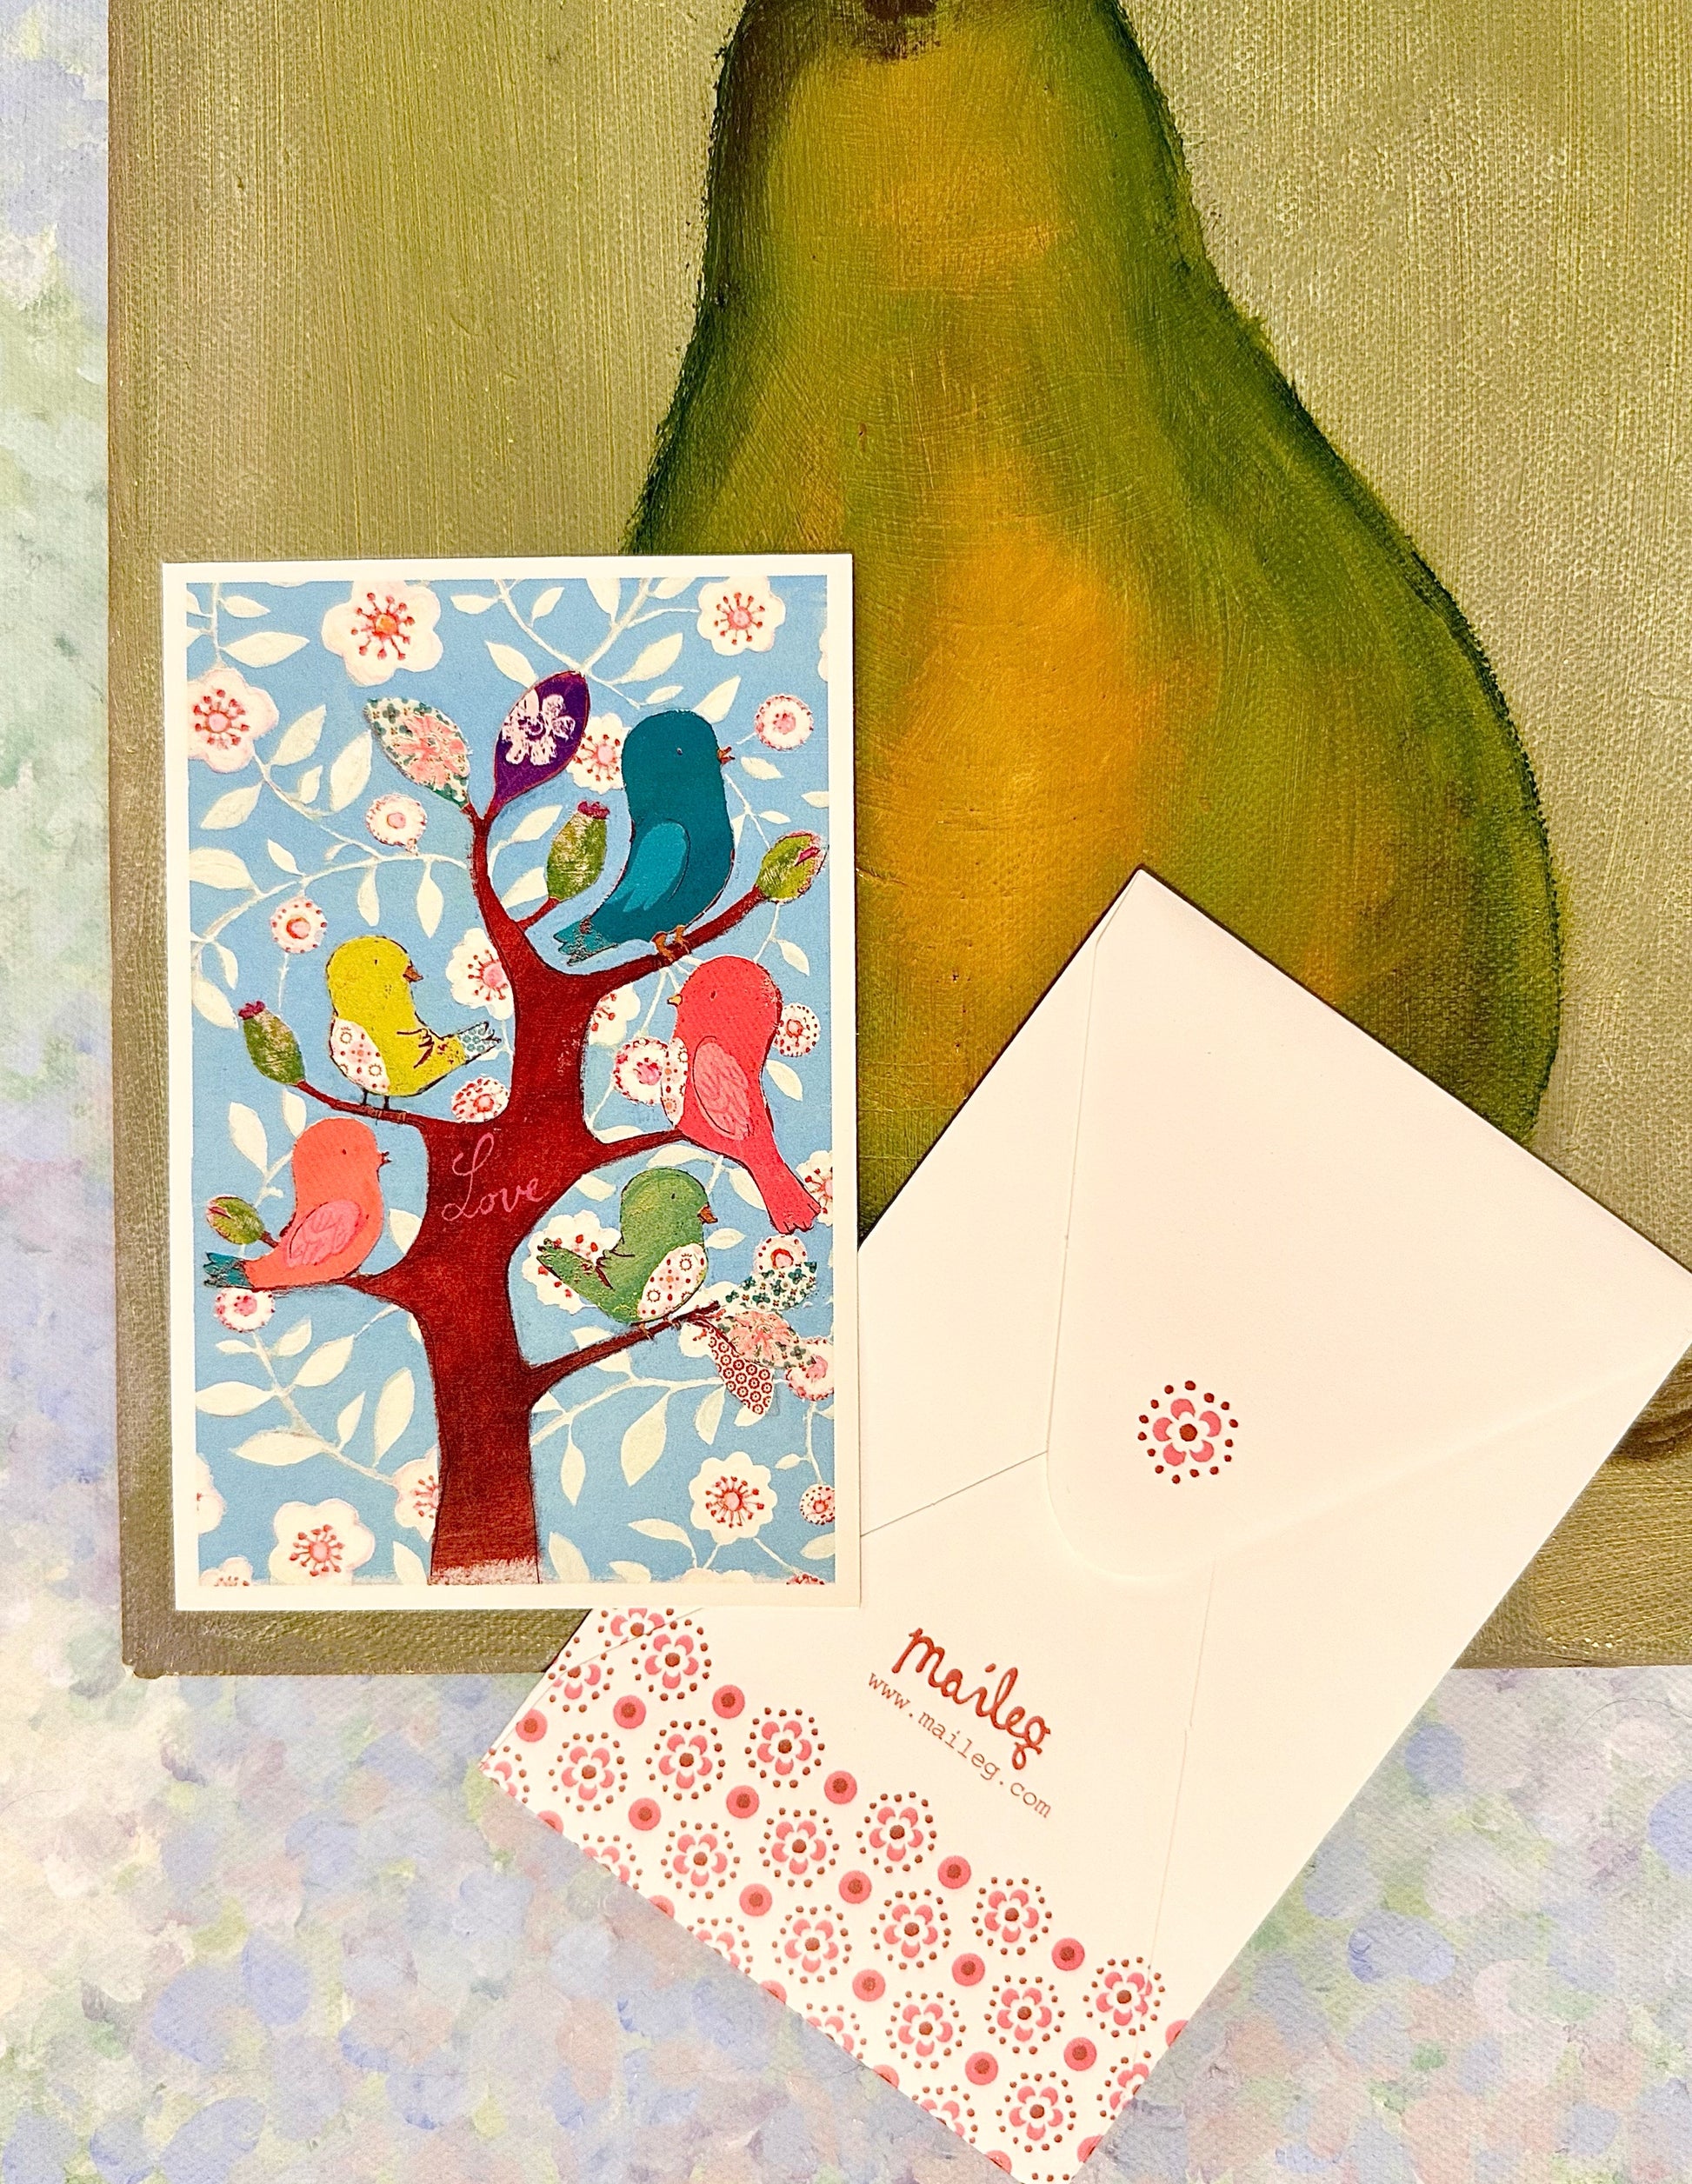 Small Card “Bird Collection” - 2011